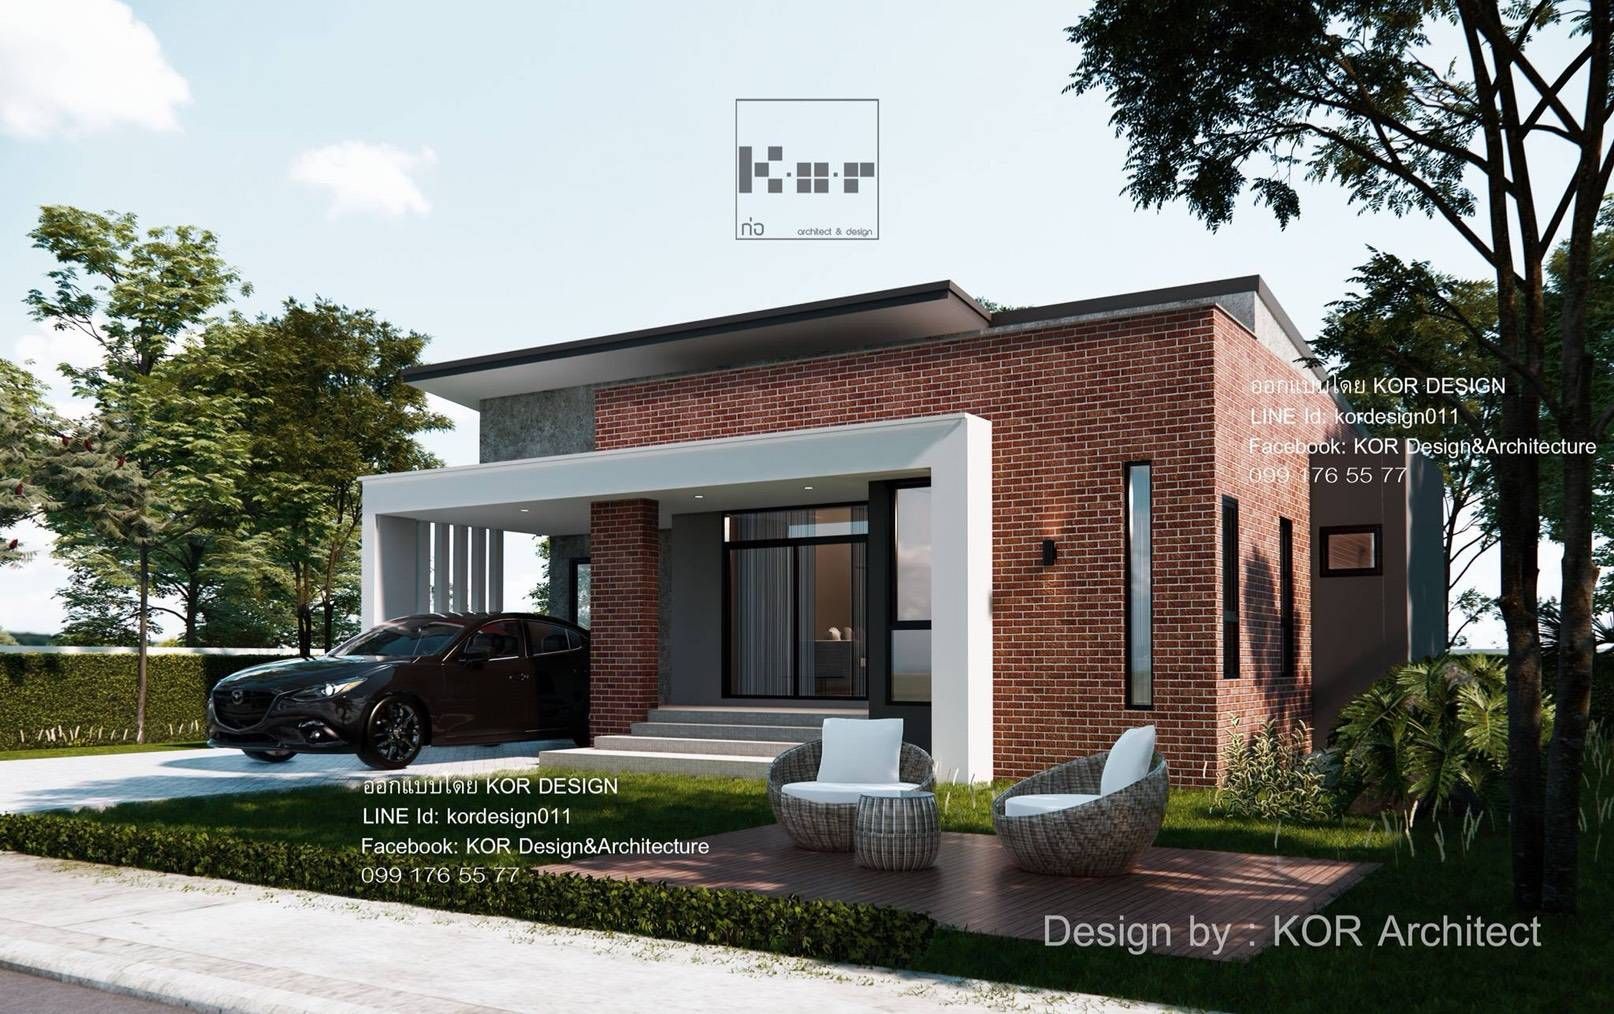 งานออกแบบบ้านชั้นเดียวรหัส MD1-002, K.O.R. Design&Architecture K.O.R. Design&Architecture Single family home Concrete